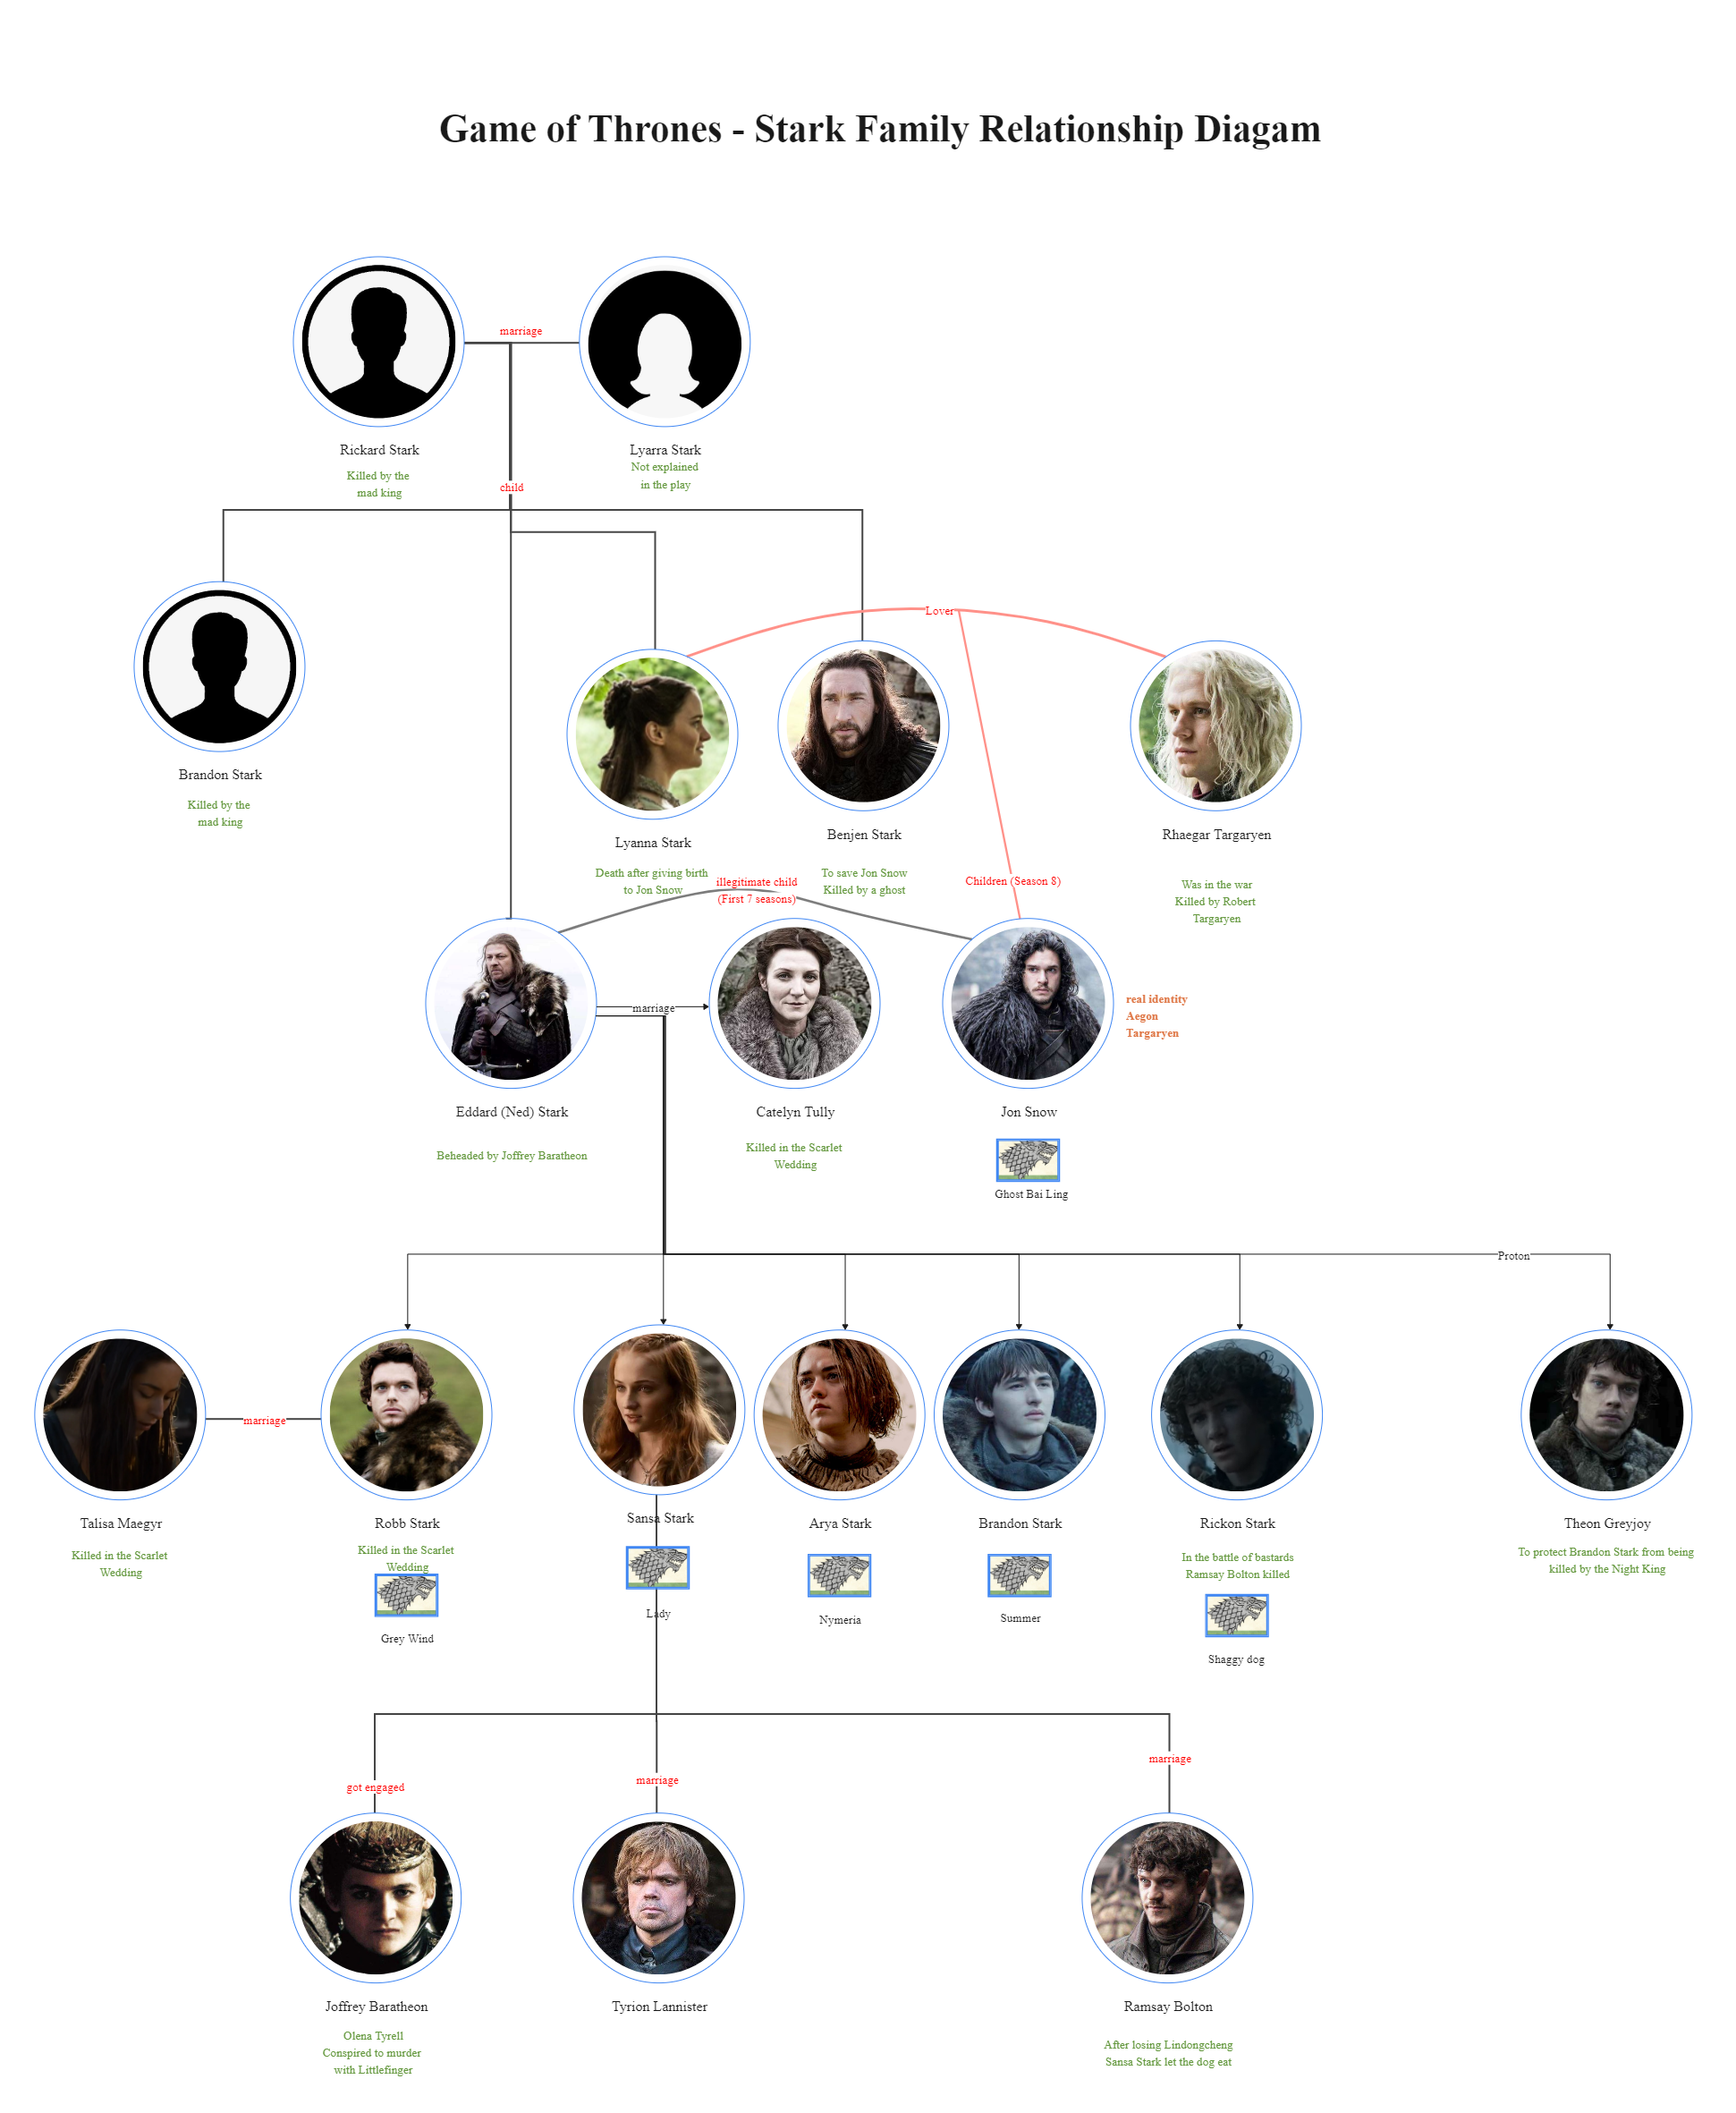 Stark Family Relationship Diagram